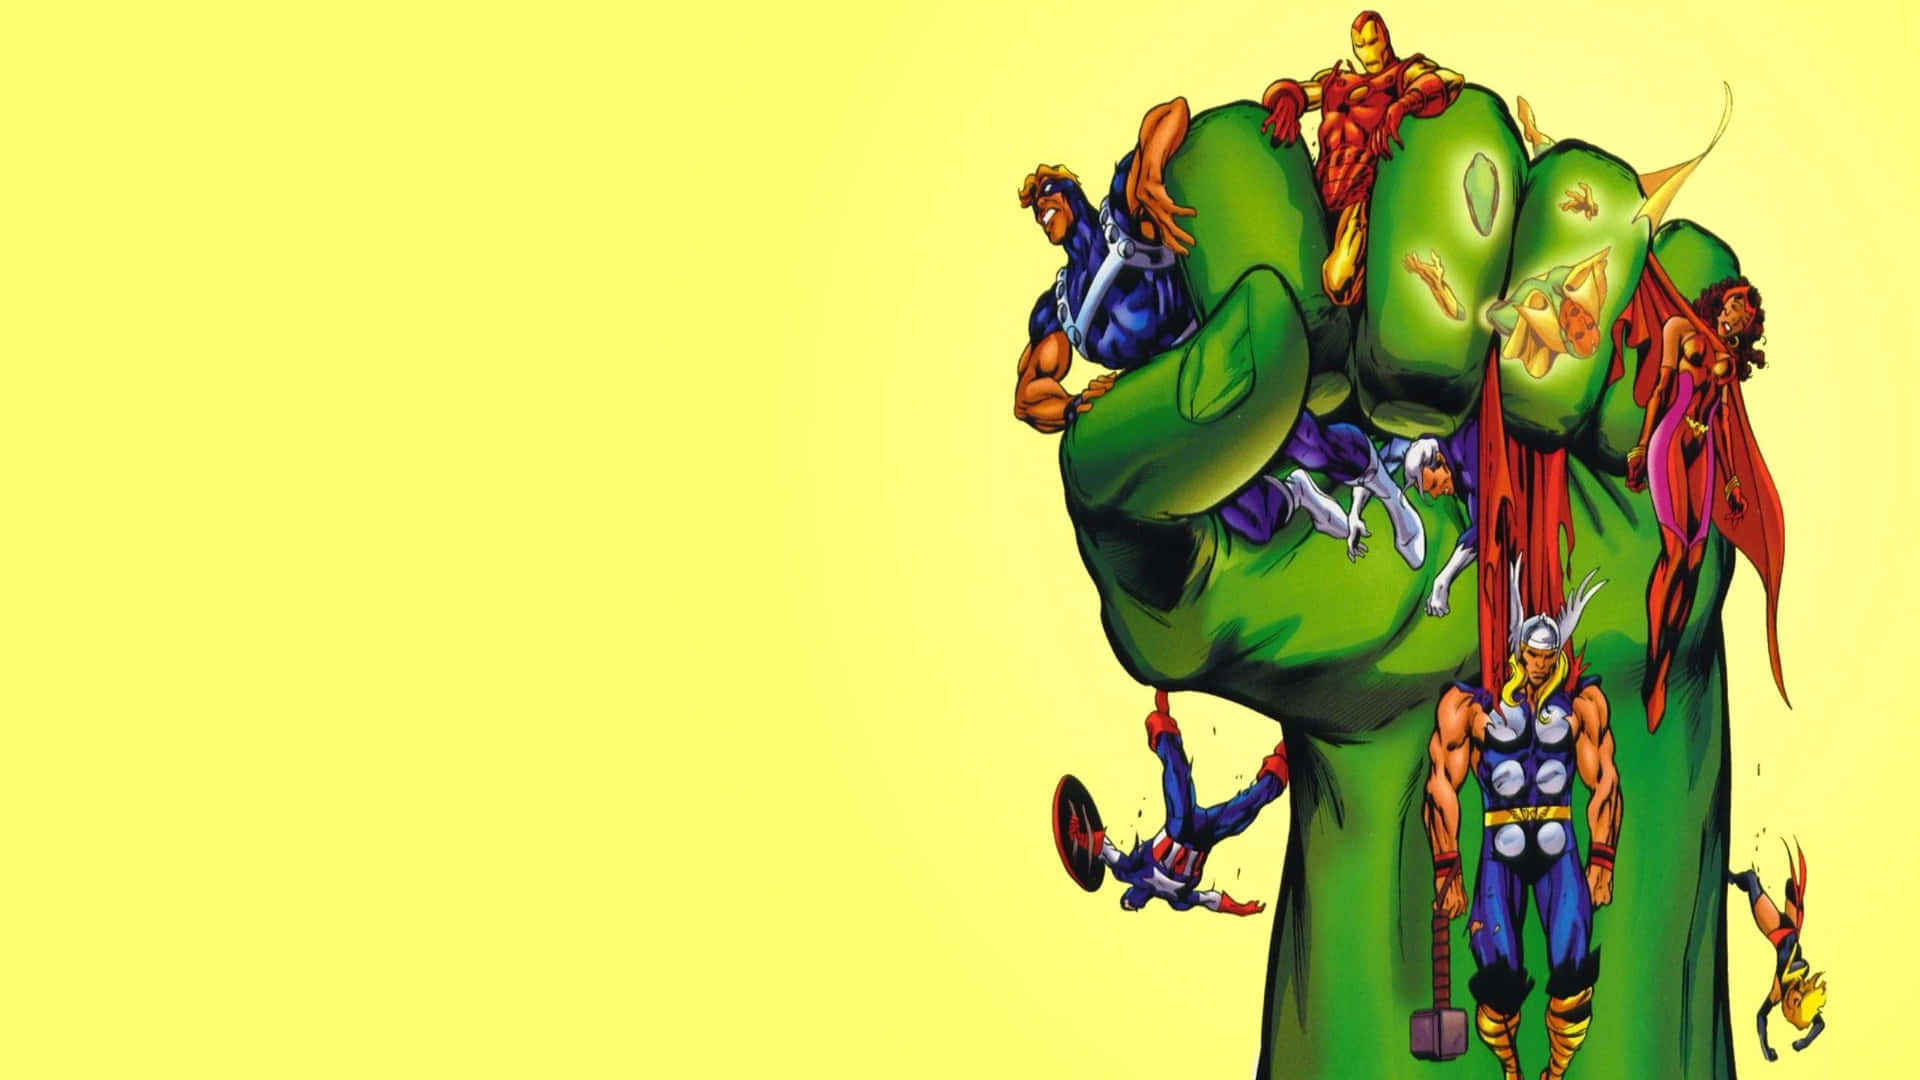 Hulk's Fist Marvel Comics 2560x1440 Wallpaper